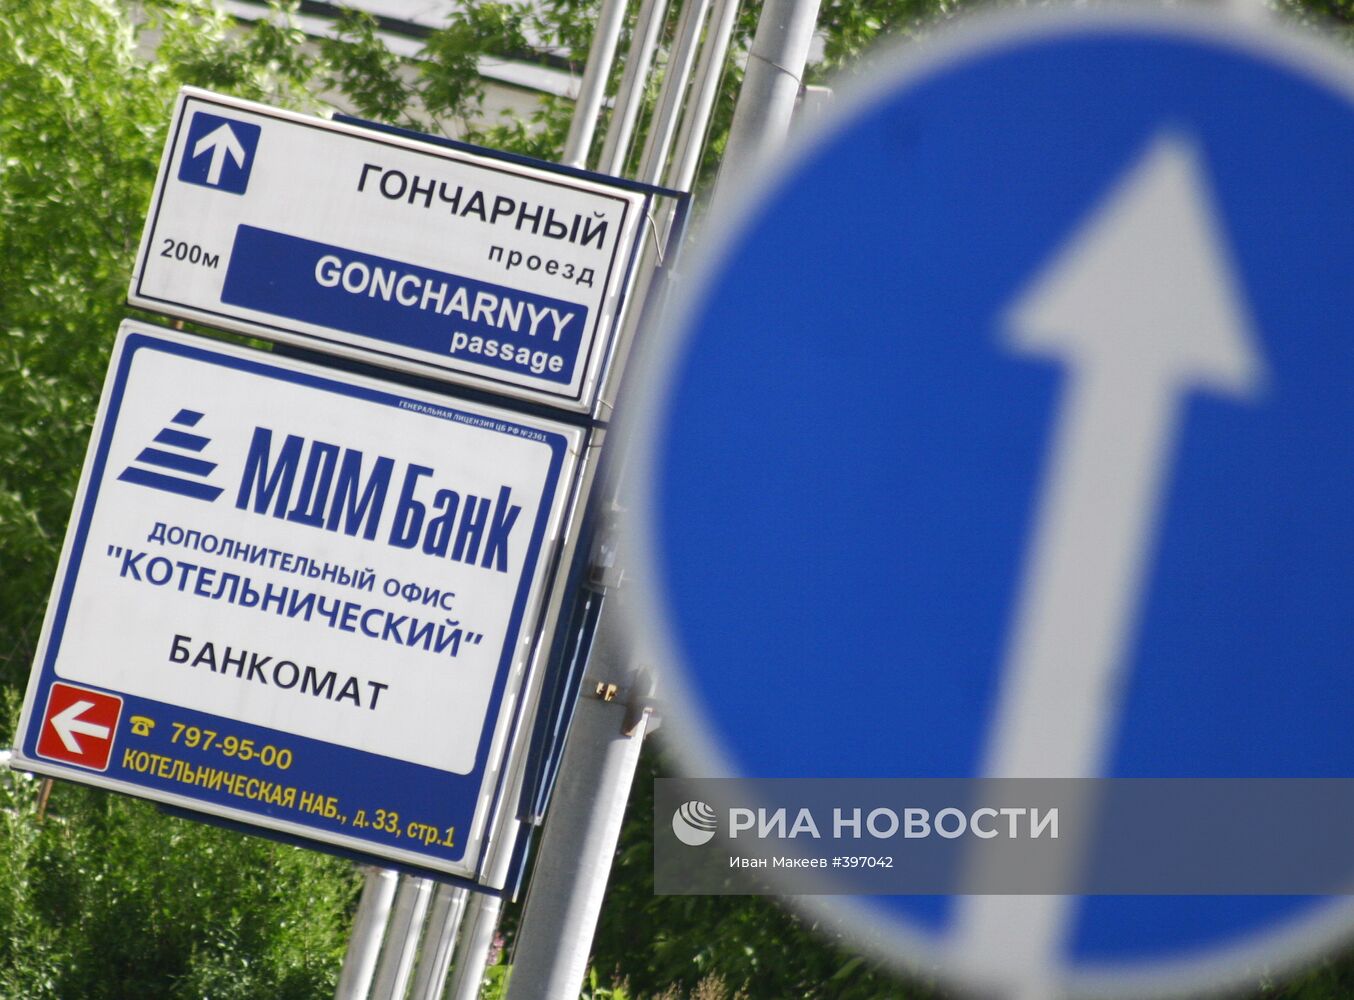 МДМ-Банк направил заявление о ликвидации